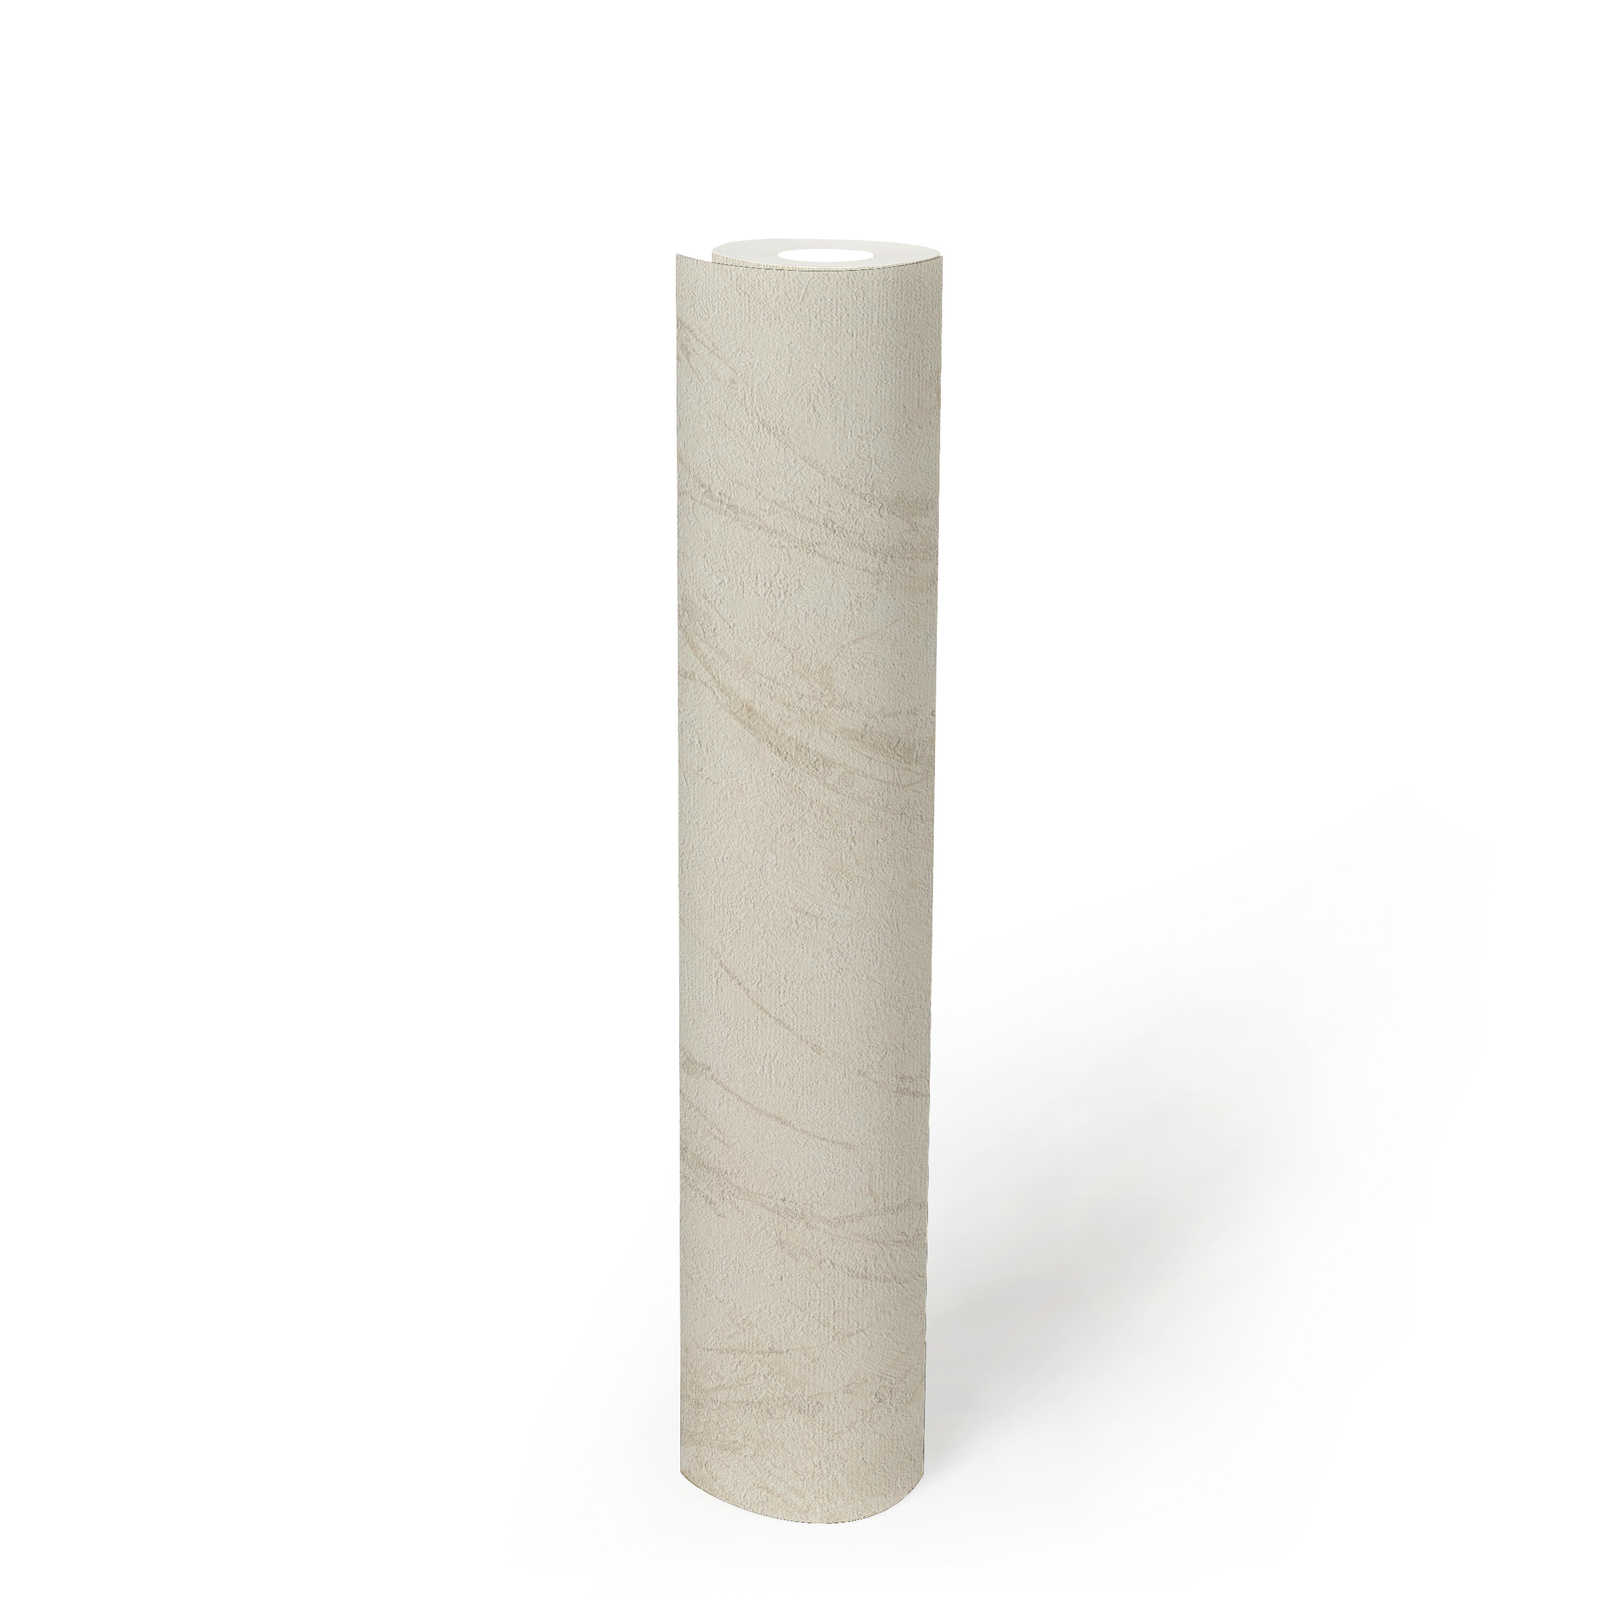             Marmerlook behang in crème met structuurdesign
        